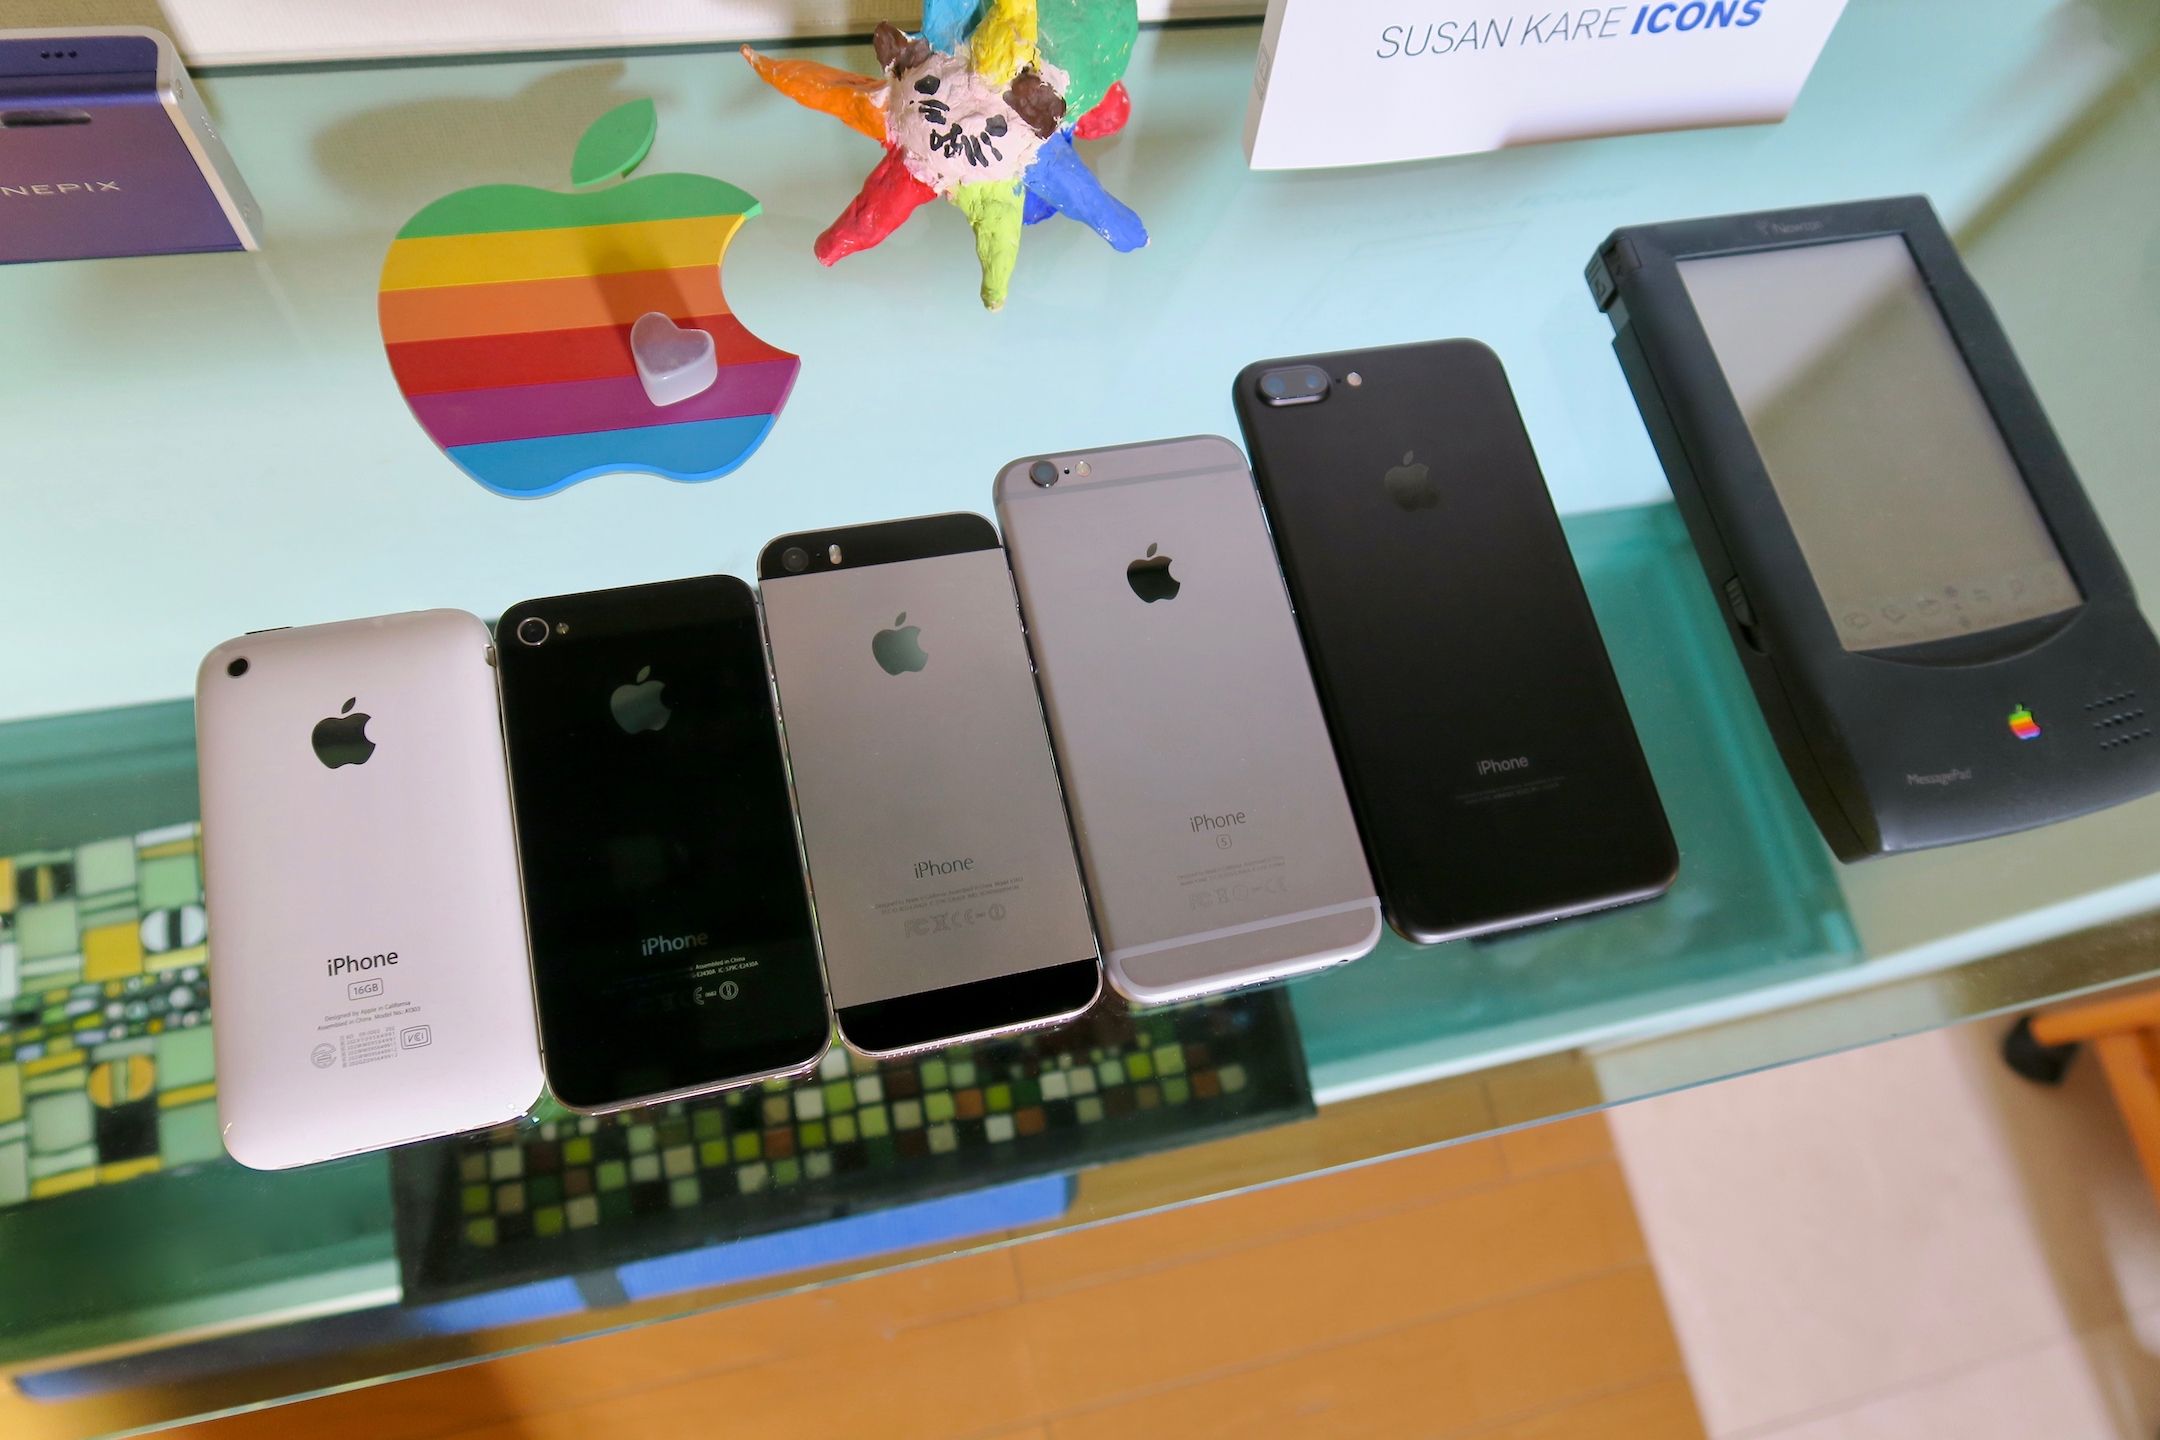 Several iPhones facedown beside an Apple Newton on a glass shelf